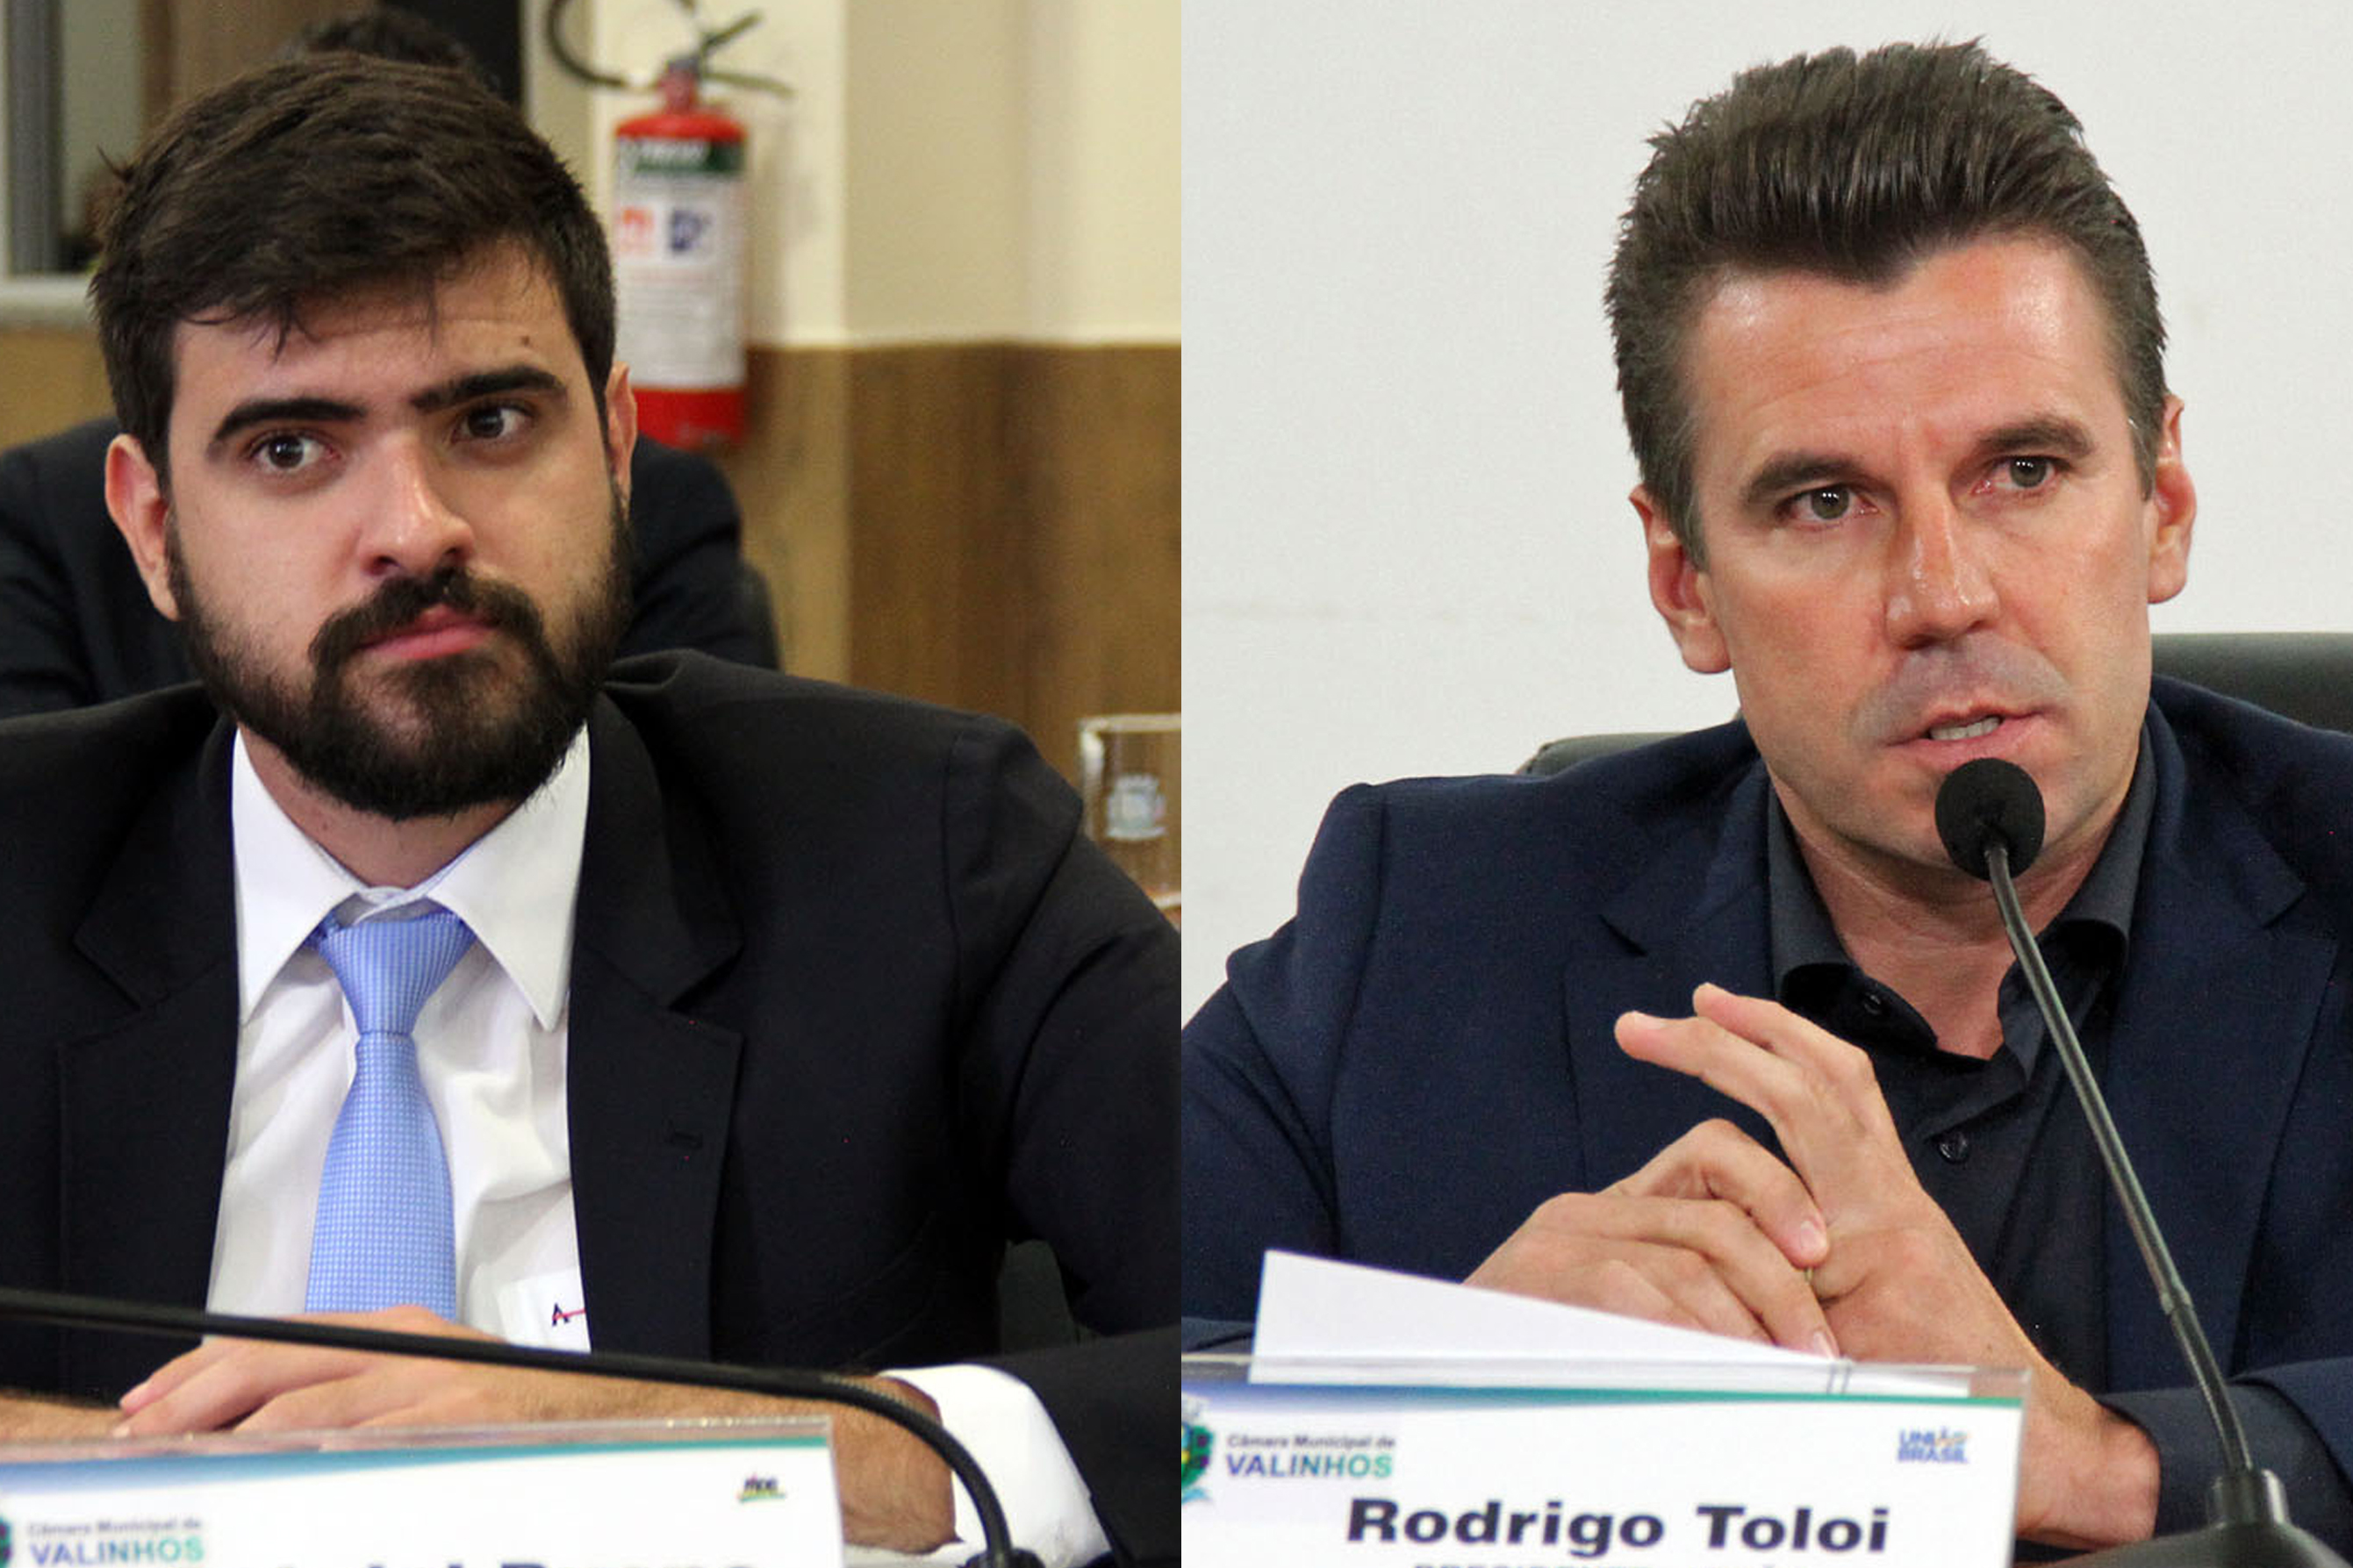 #PraCegoVer: foto-montagem mostra o vereador Gabriel Bueno à esquerda e o vereador Rodrigo Toloi à direita. Ambos estão no plenário, durante a sessão ordinária.